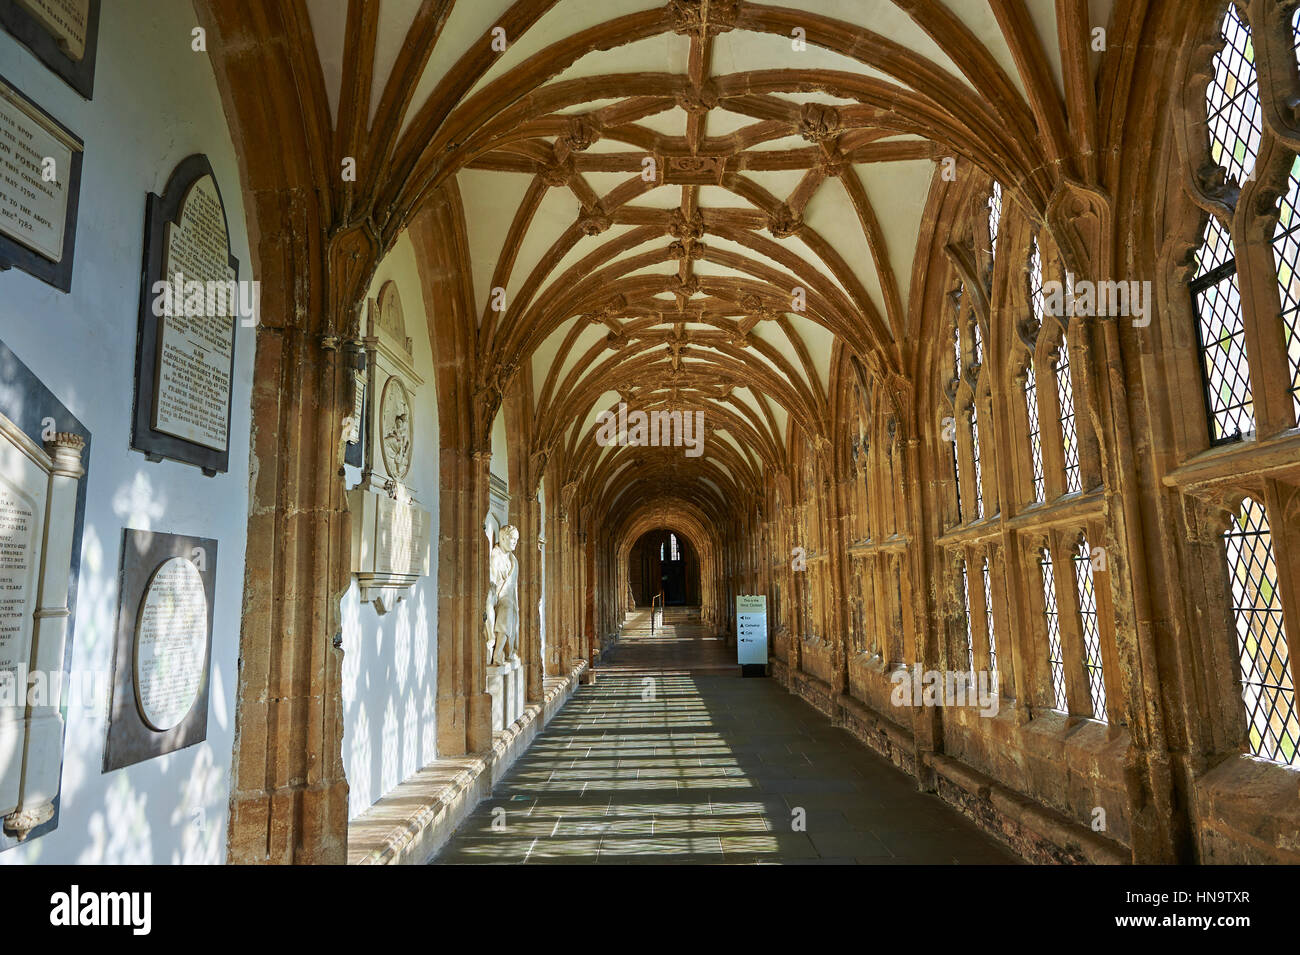 El corredor de los pozos medieval catedral construida en el estilo gótico inglés temprano en 1175, Wells Somerset, Inglaterra Foto de stock